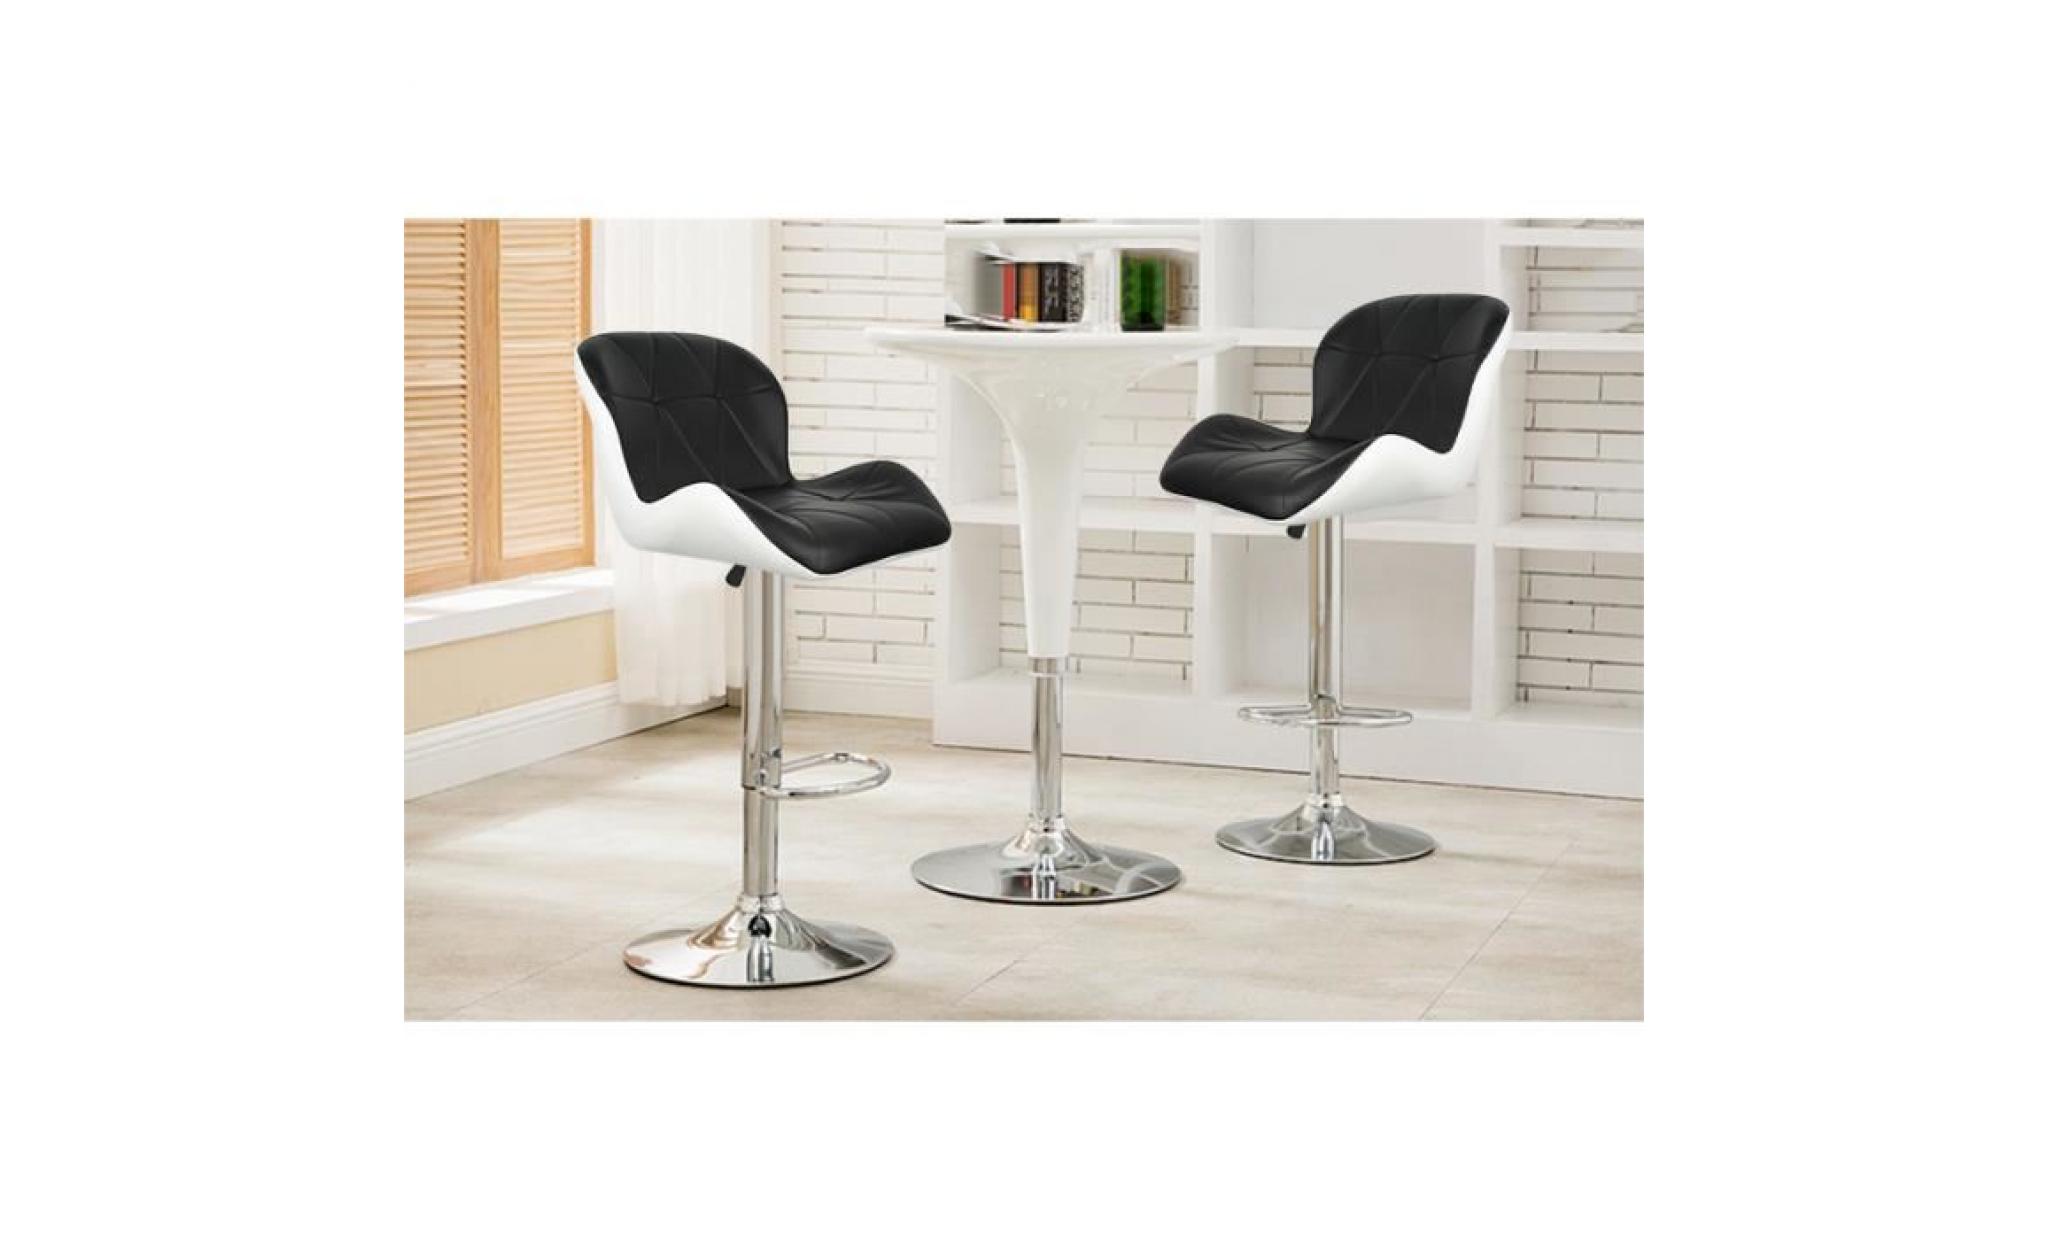 8x tabourets de bar,chaise moderne stools À la cuisine en faux cuir nouvelle chaise pu cuir noir+blanc pas cher